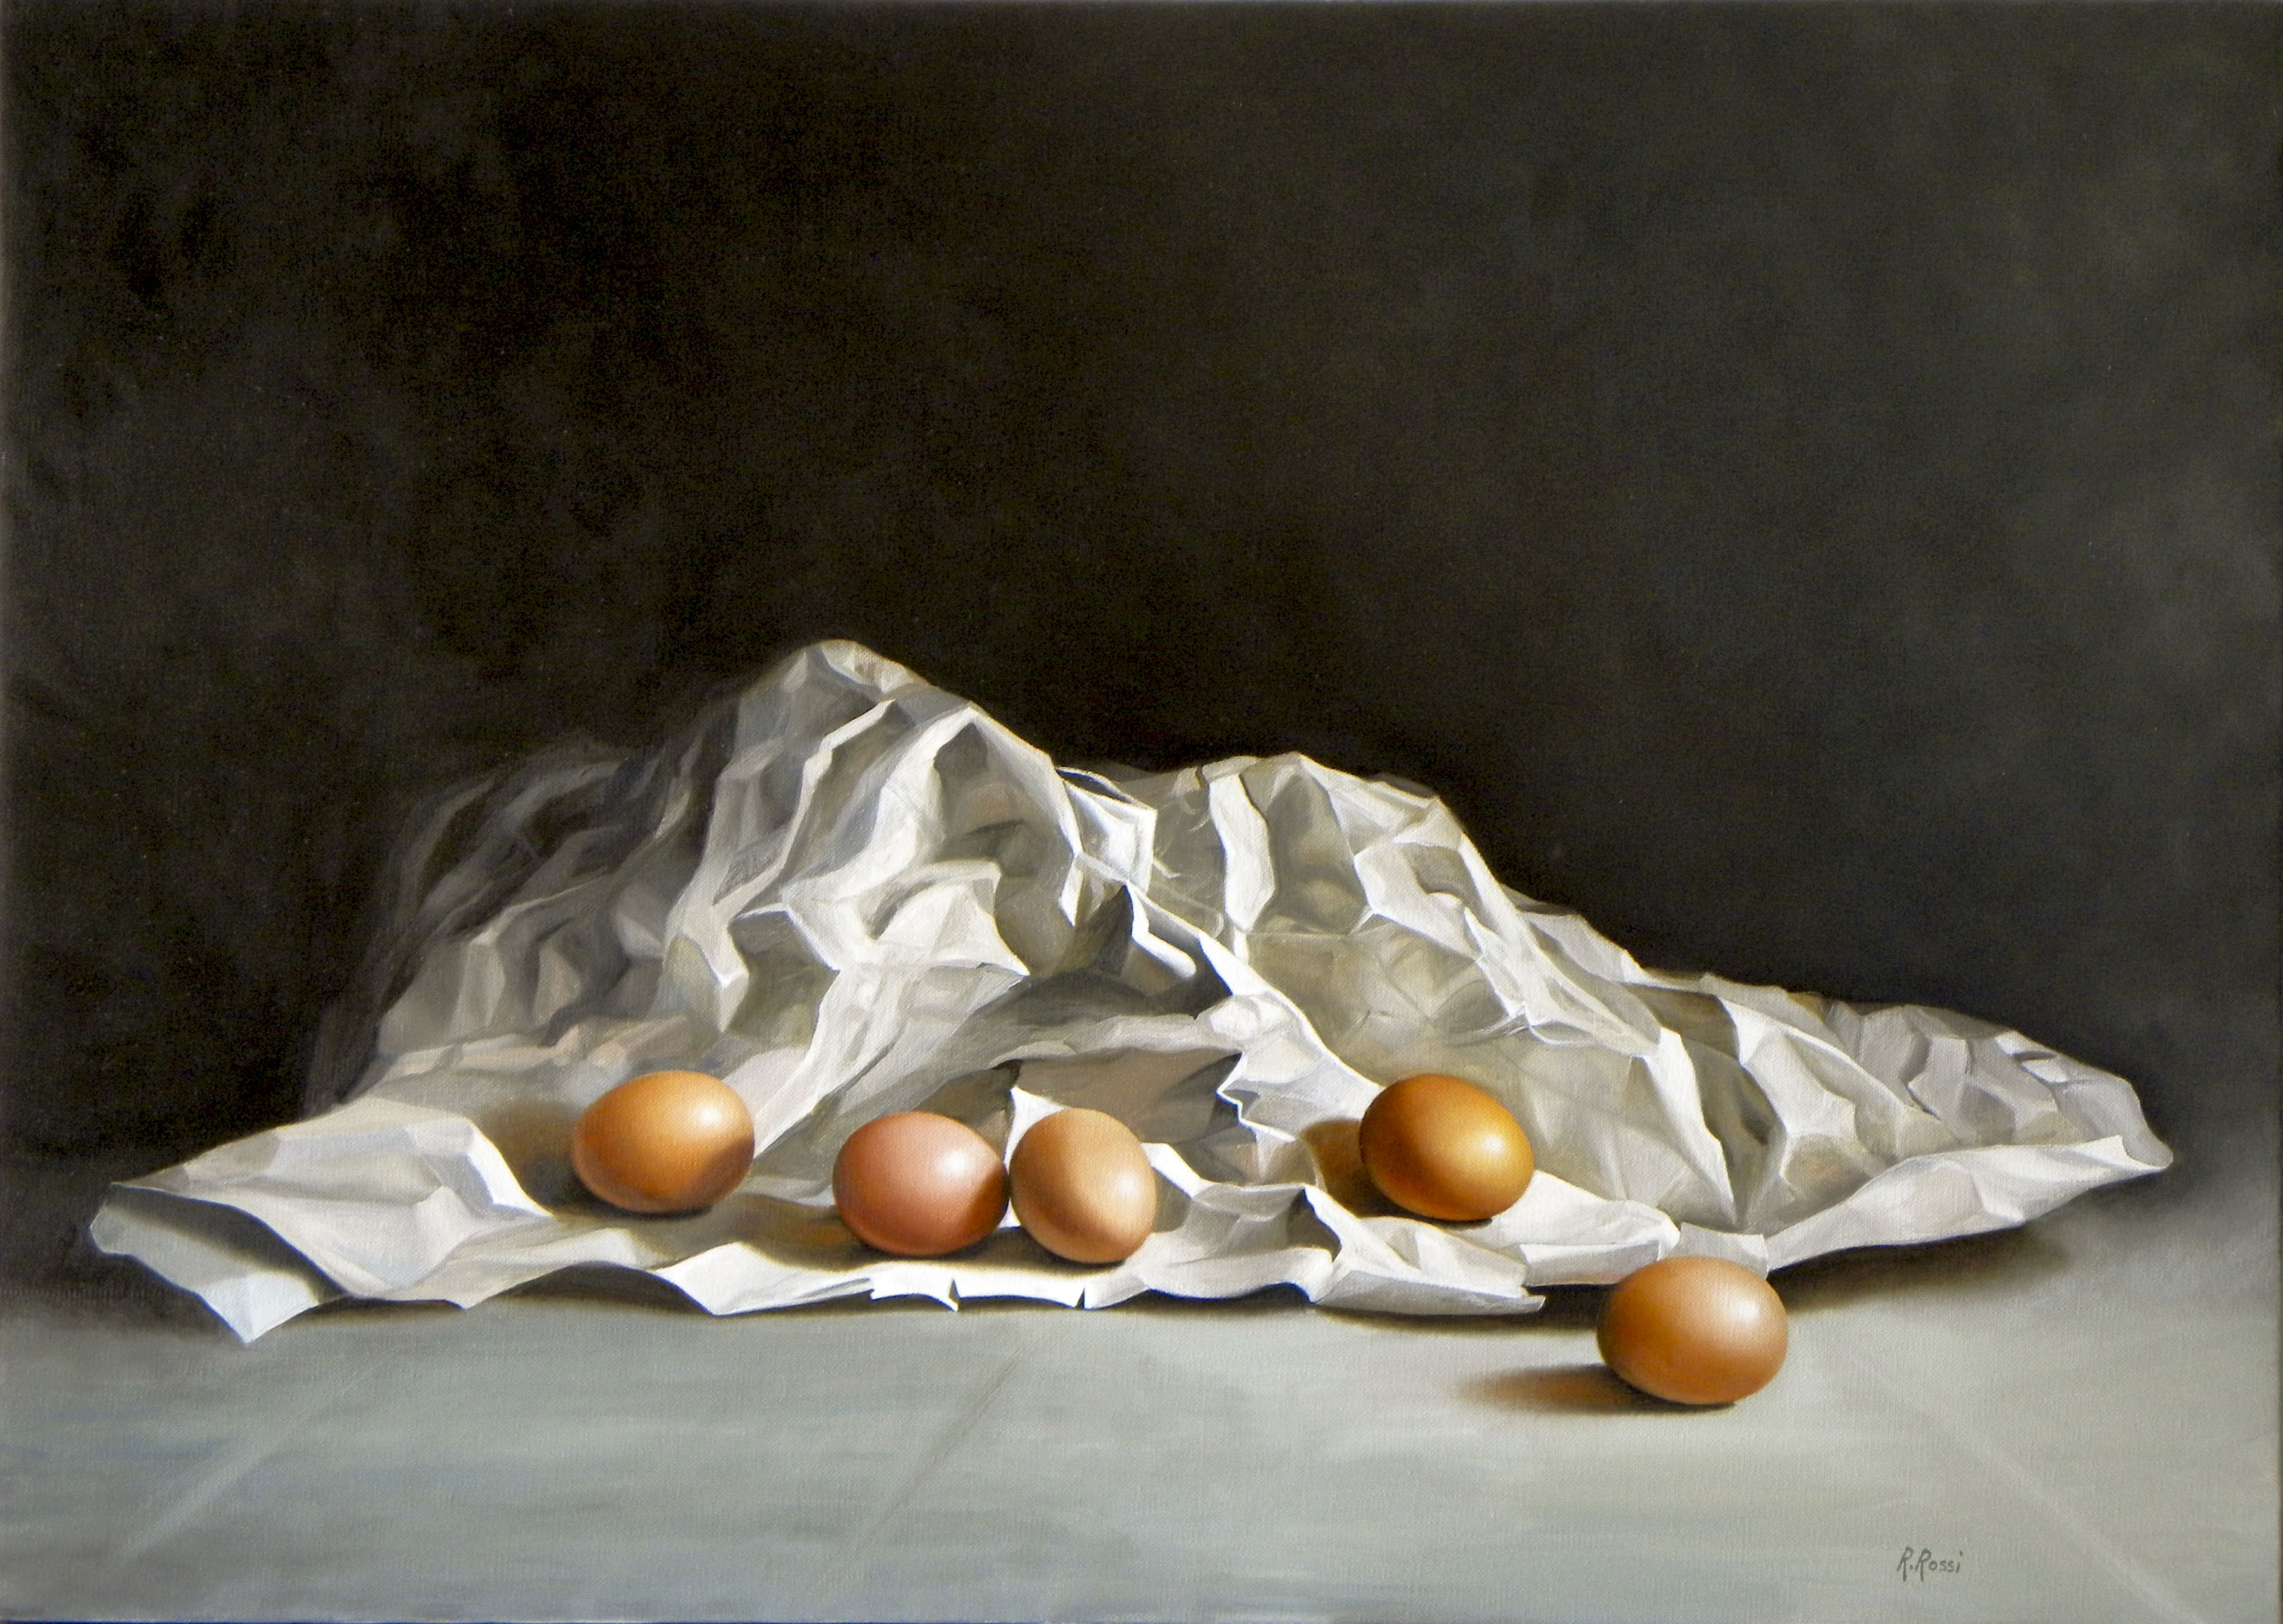 2012 roberta rossi – uova nel cartoccio – olio su tela – 50 x 70